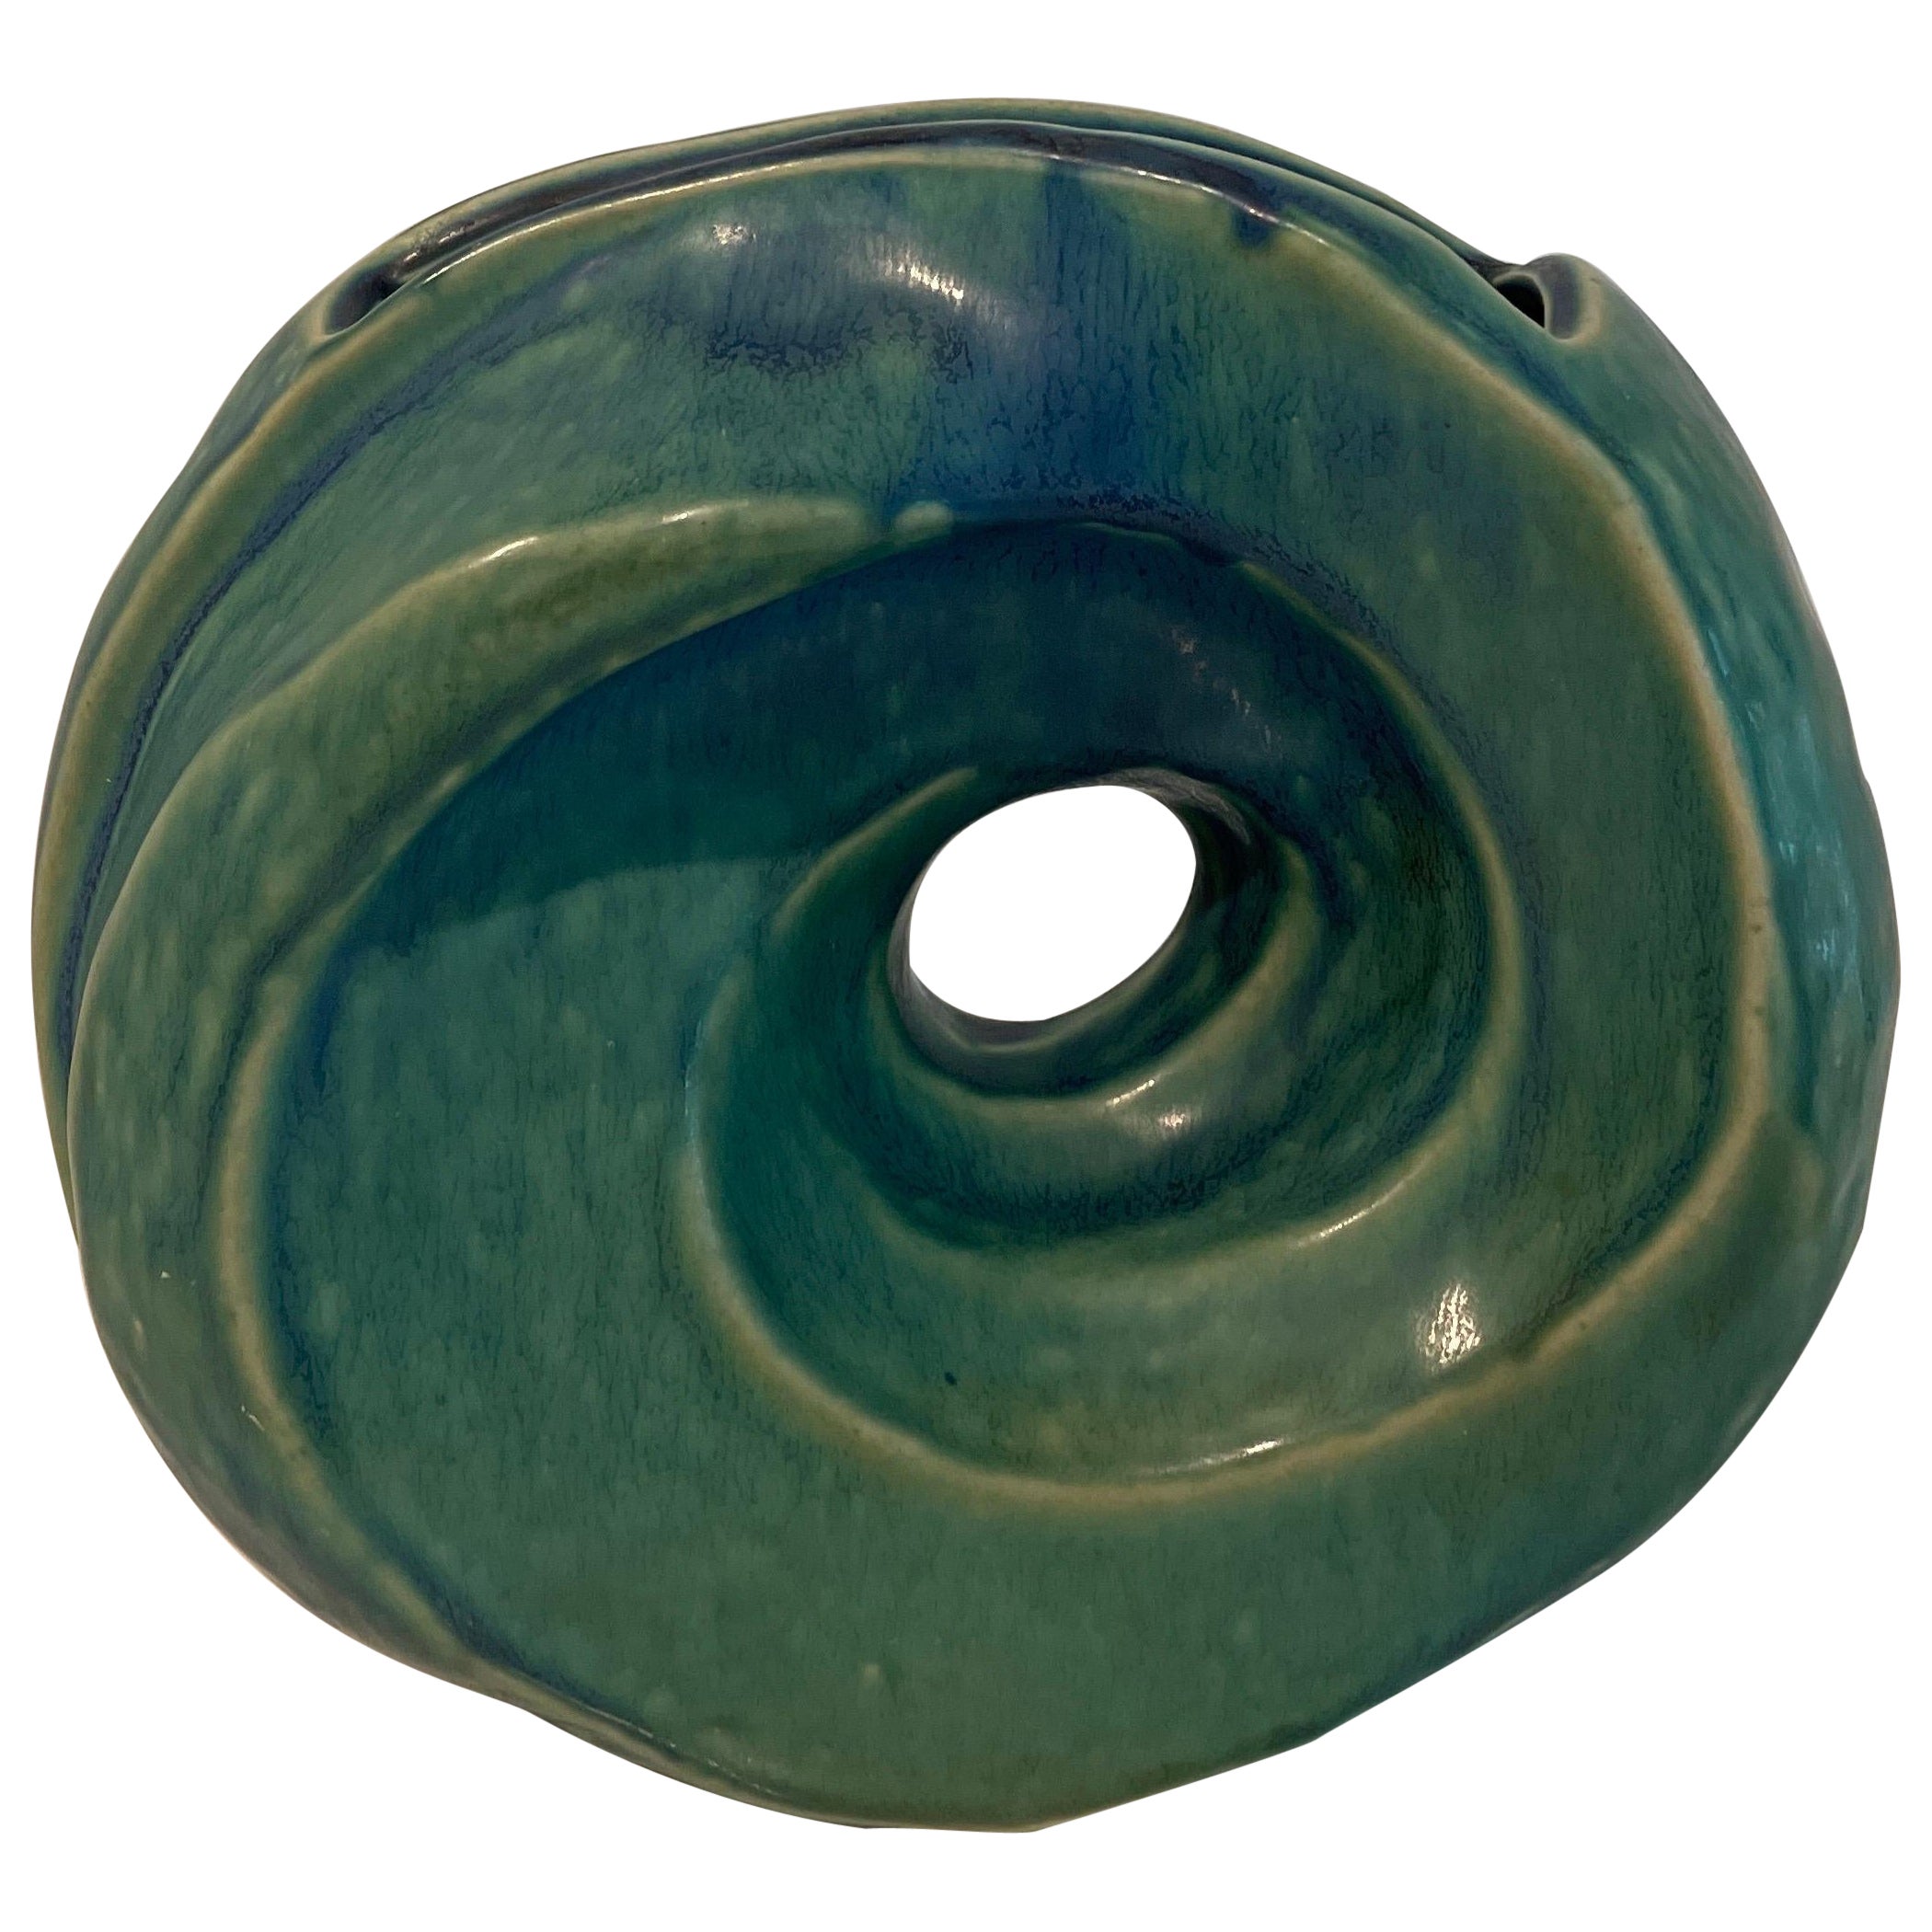 Sculptural swirl ceramic vase